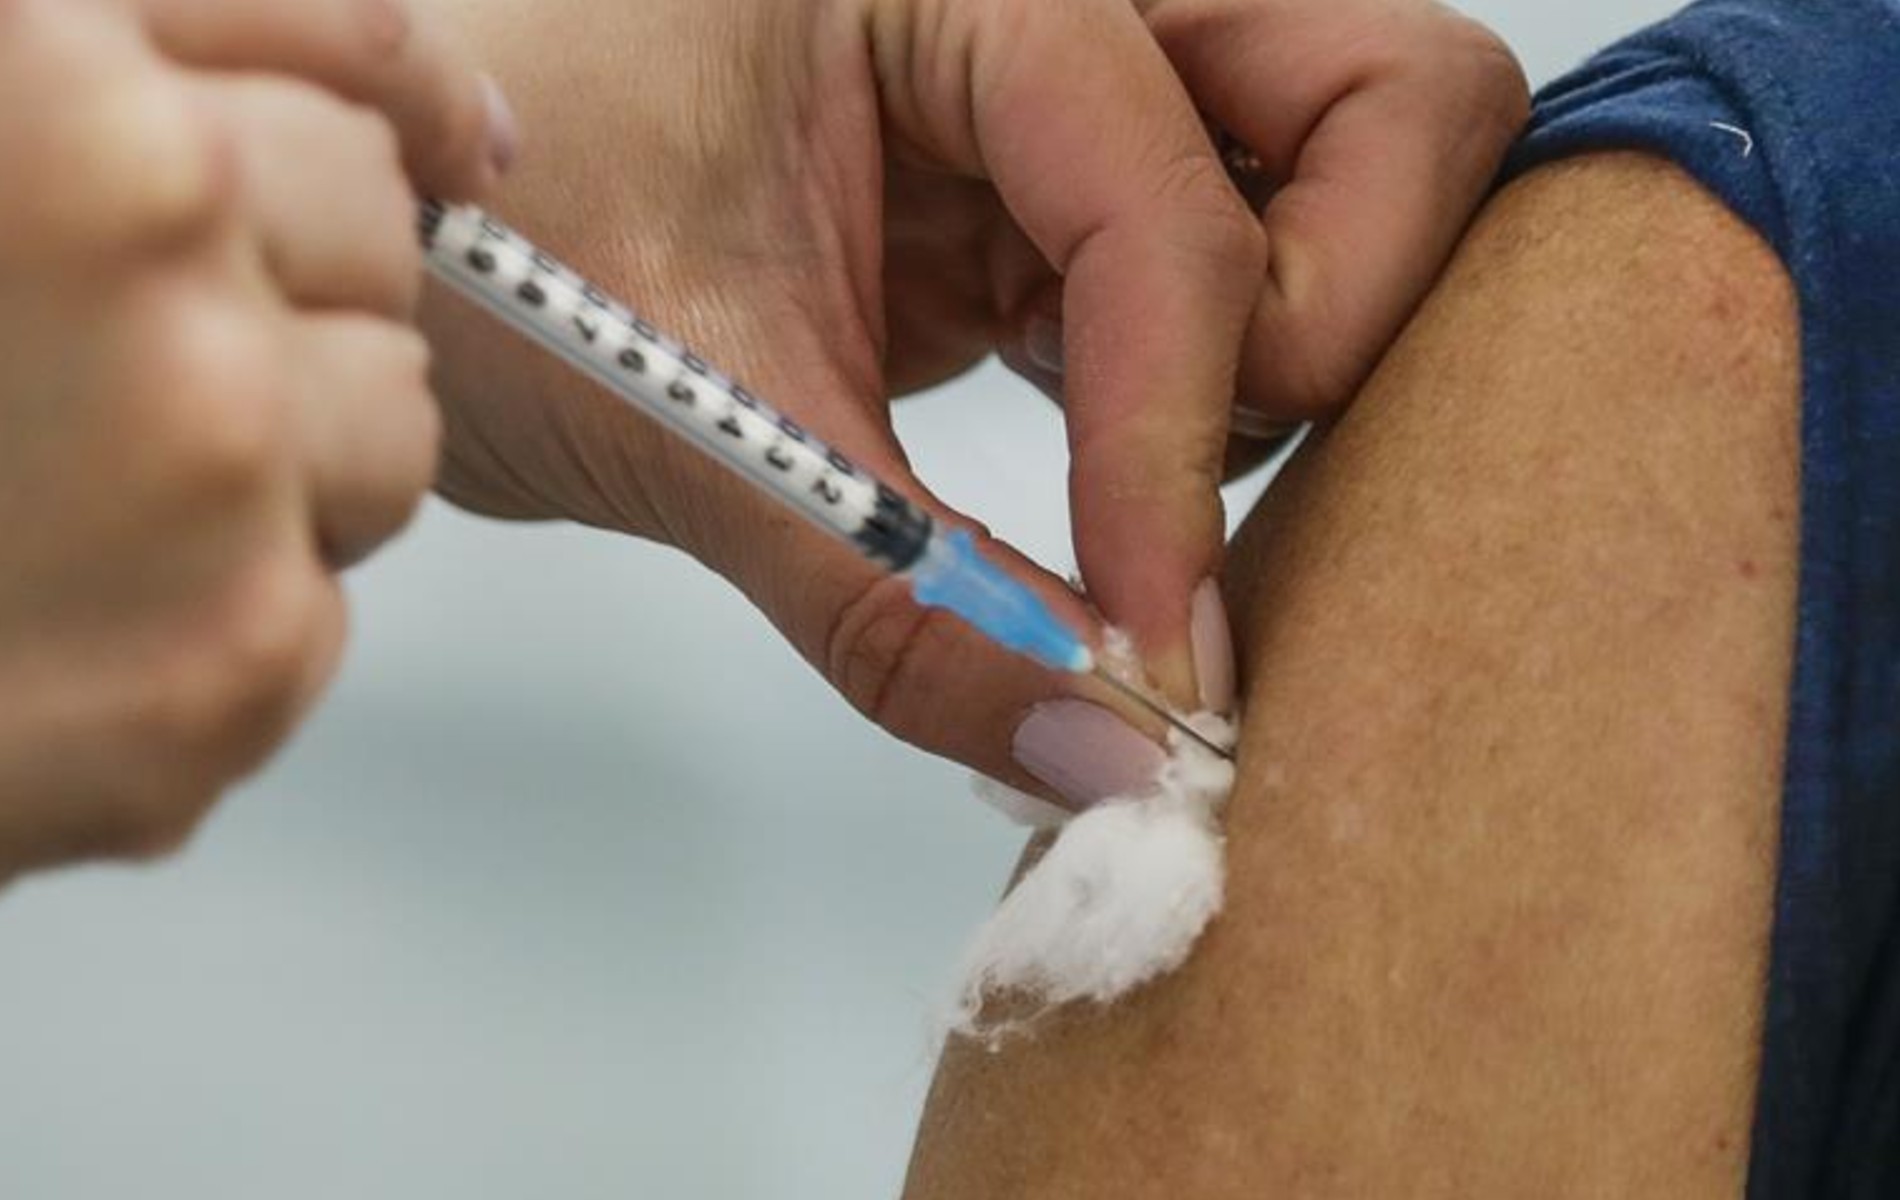 GTA RP Cidade Alta terá vacinação com a Pfizer para combater a